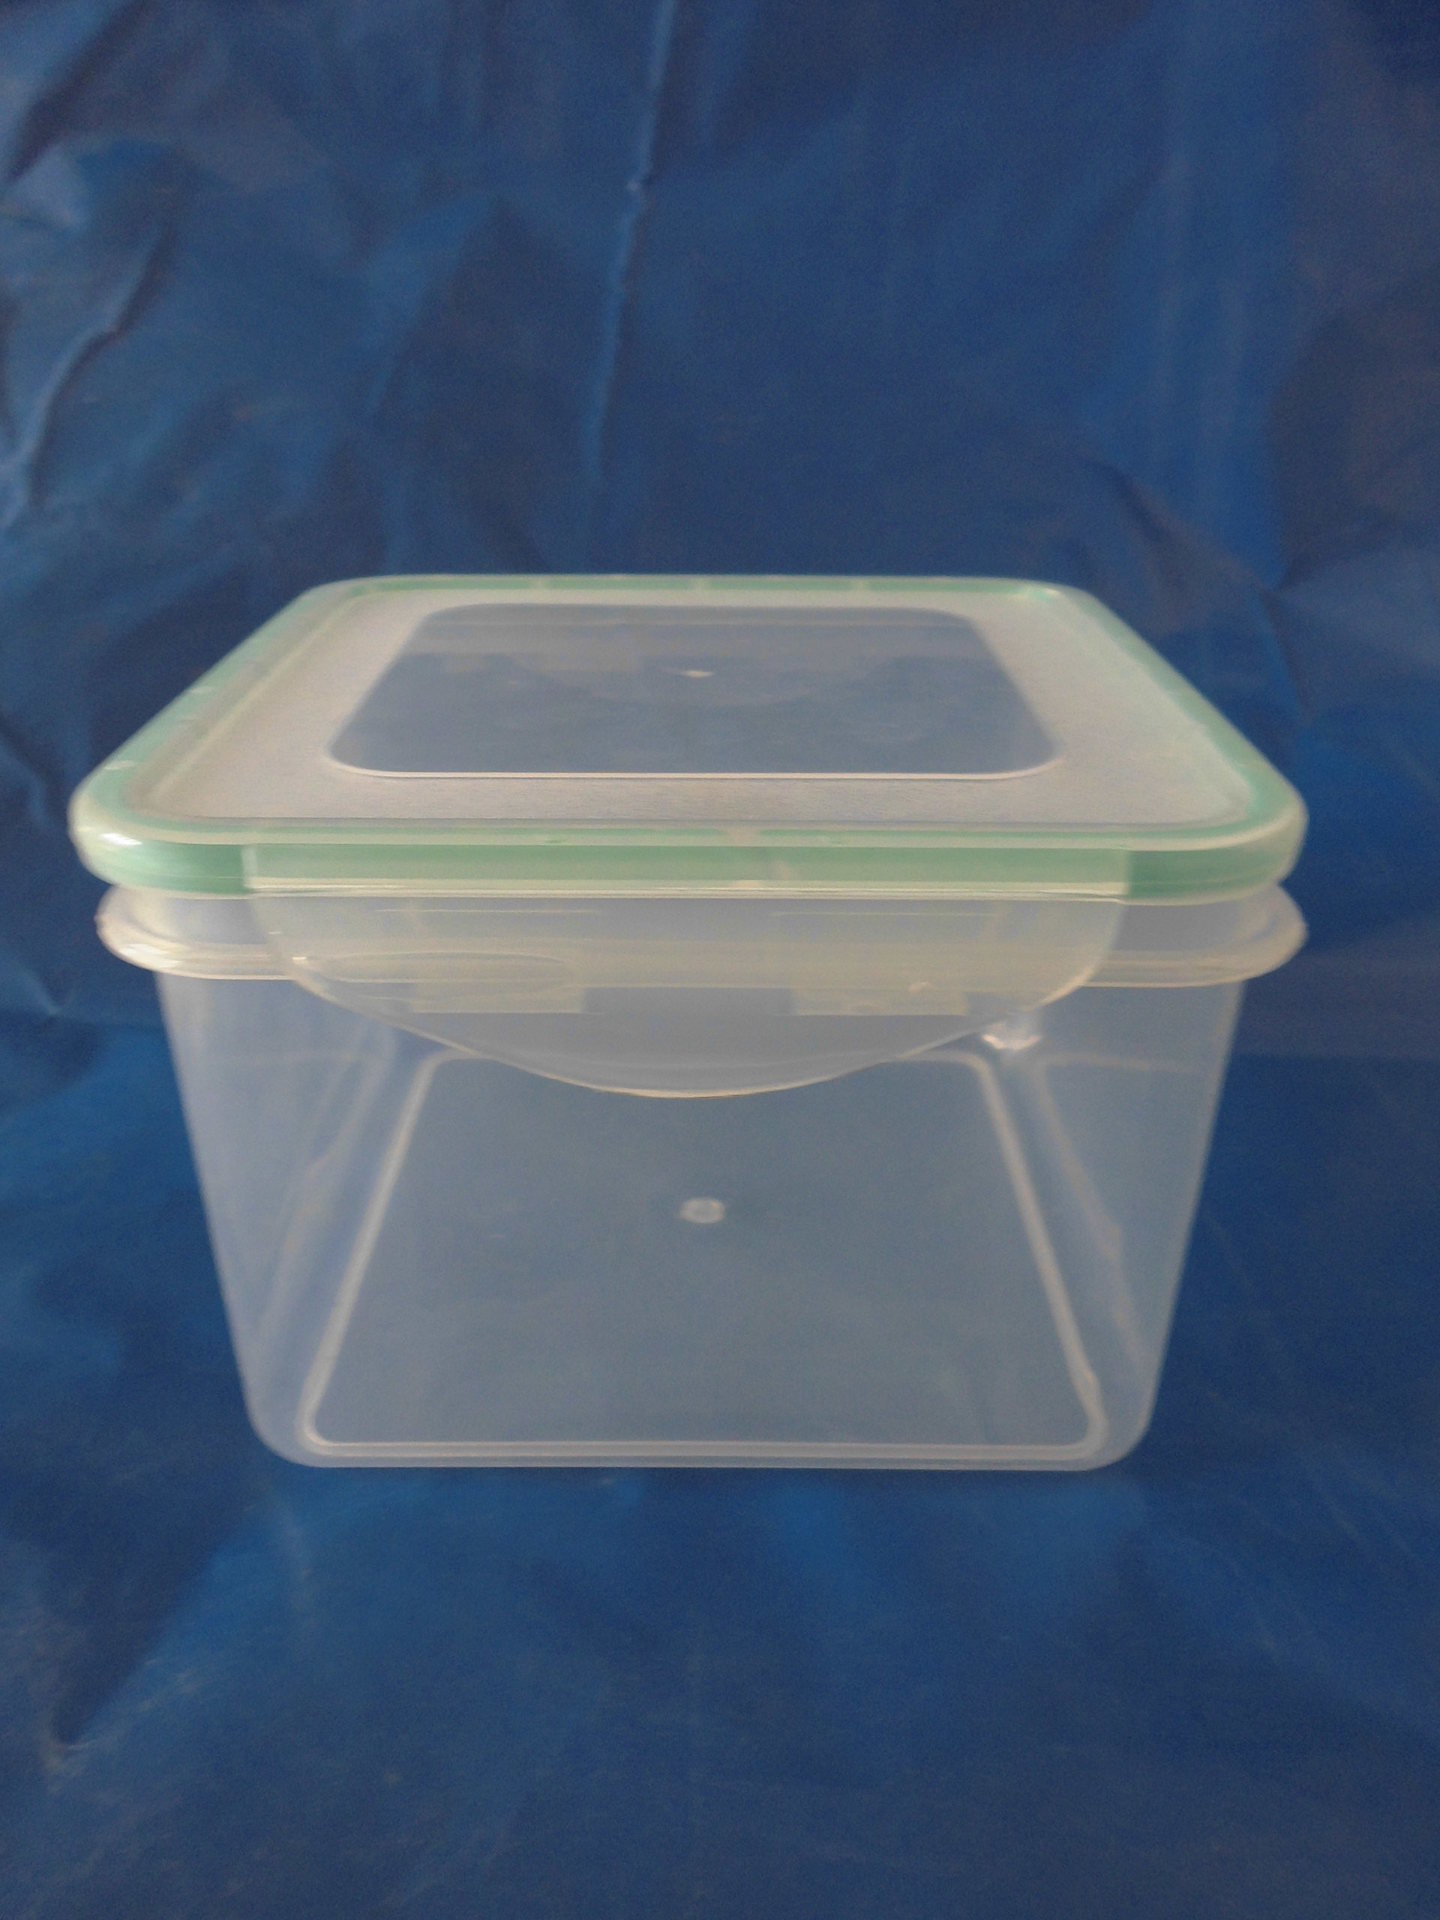 塑料储物盒可以装热的食物吗